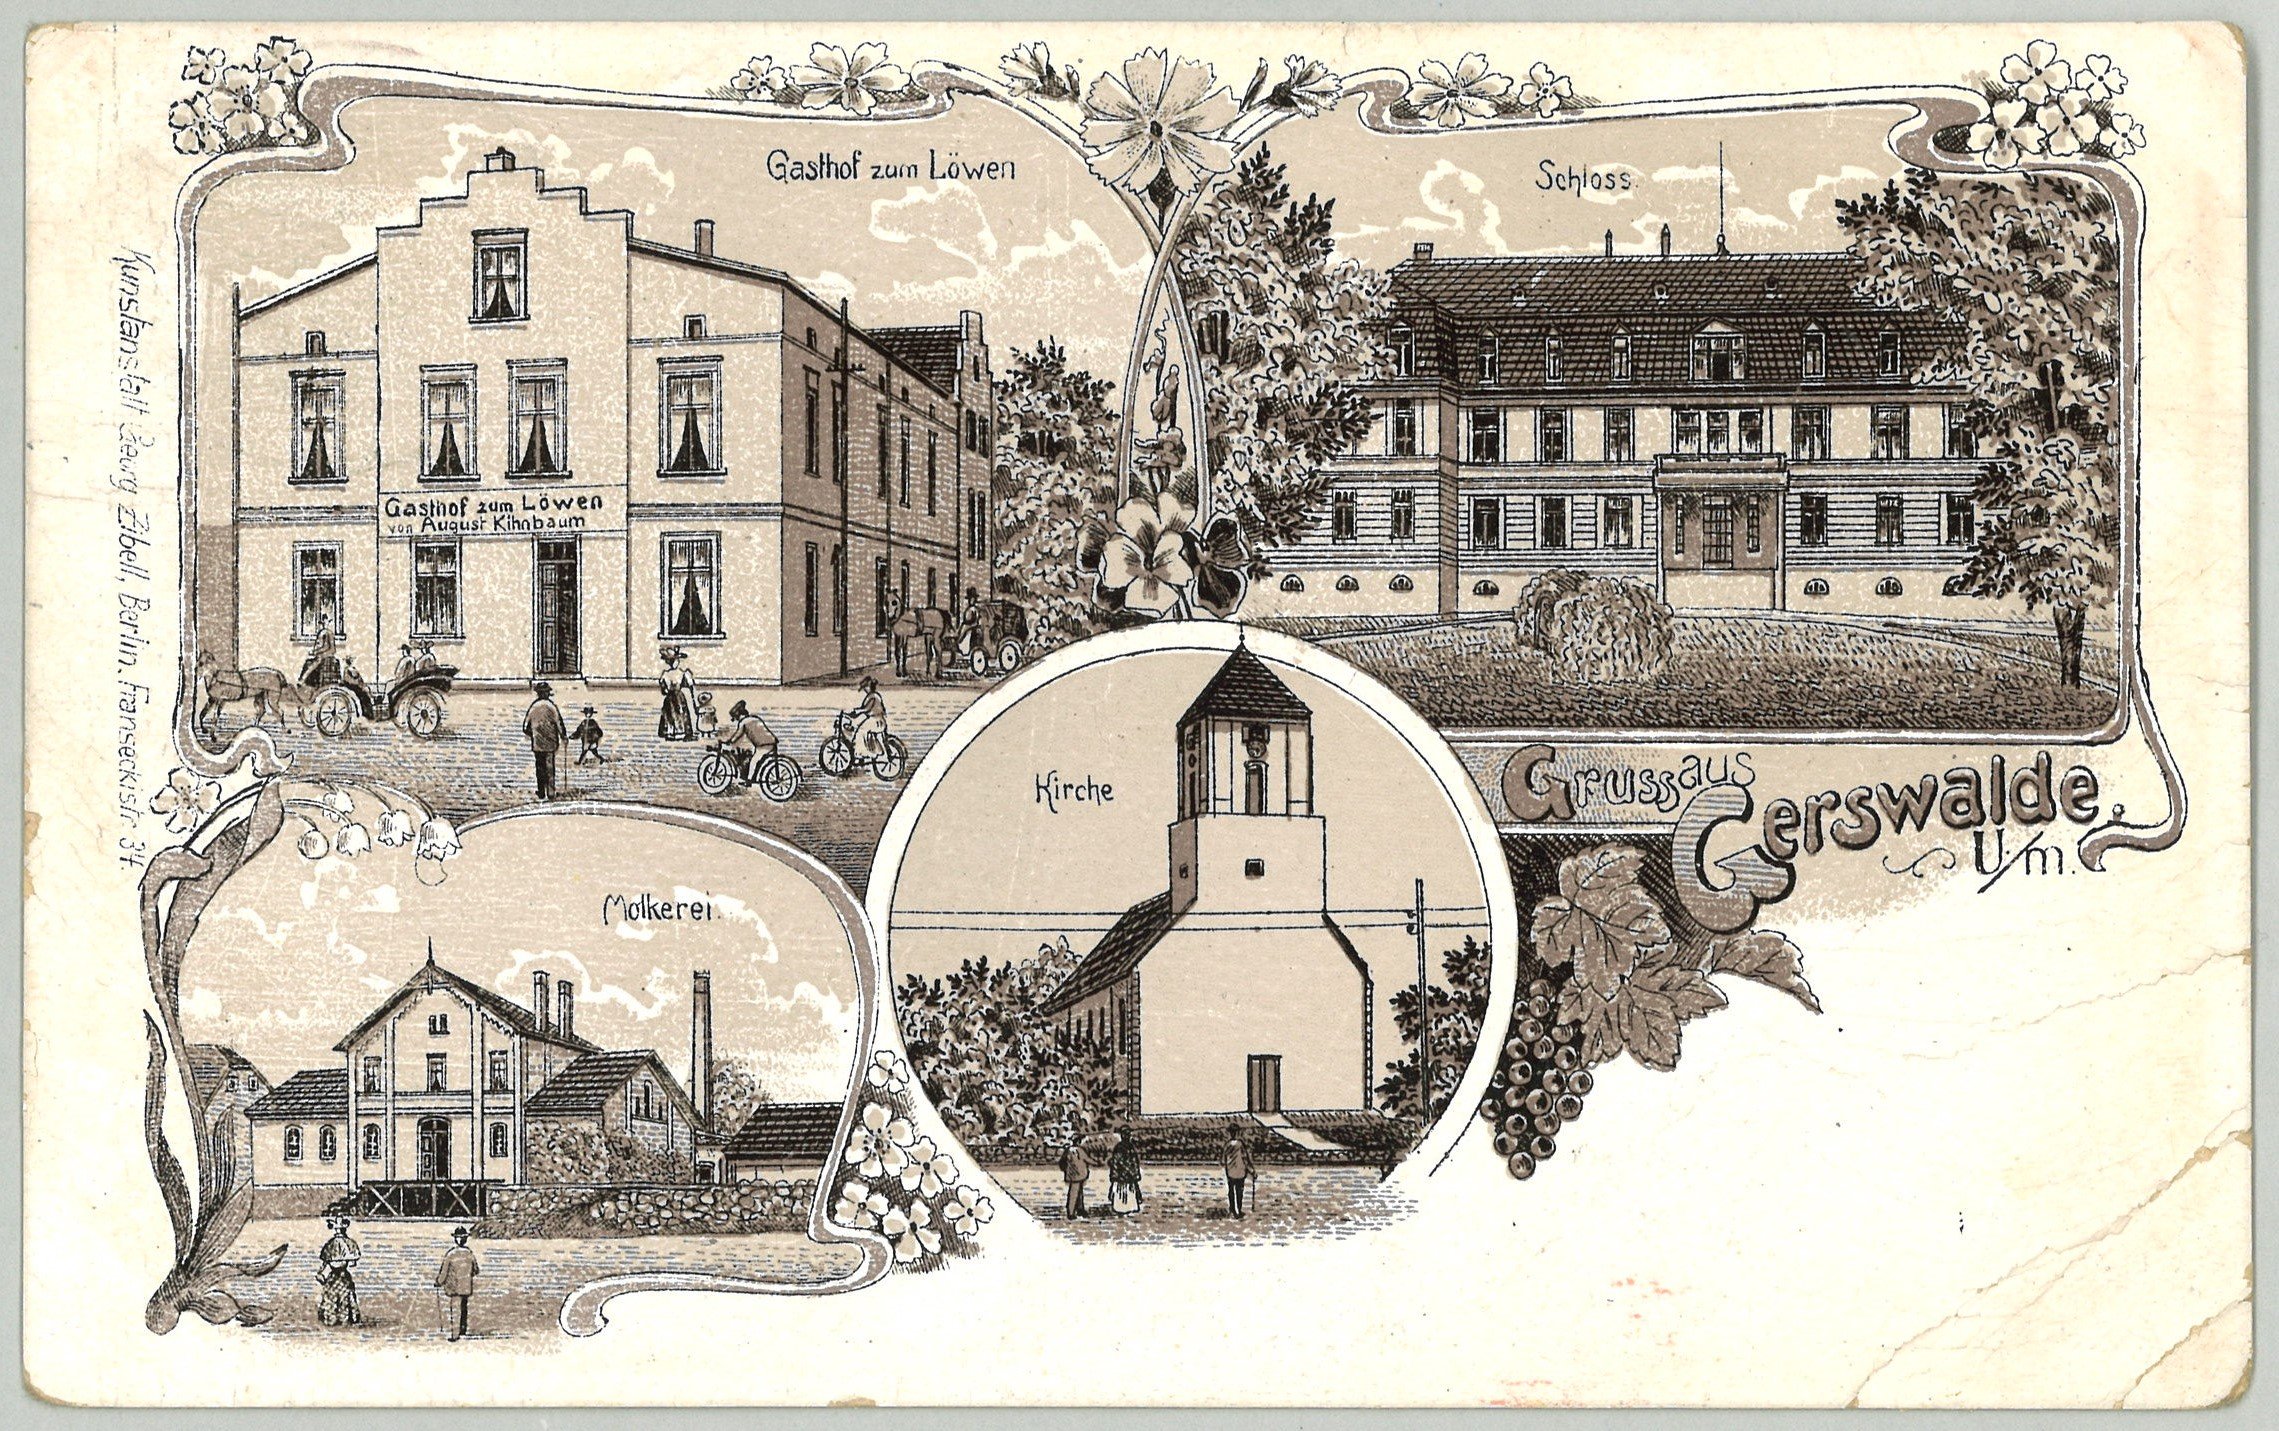 Gerswalde: Vier Ansichten (Landesgeschichtliche Vereinigung für die Mark Brandenburg e.V., Archiv CC BY)